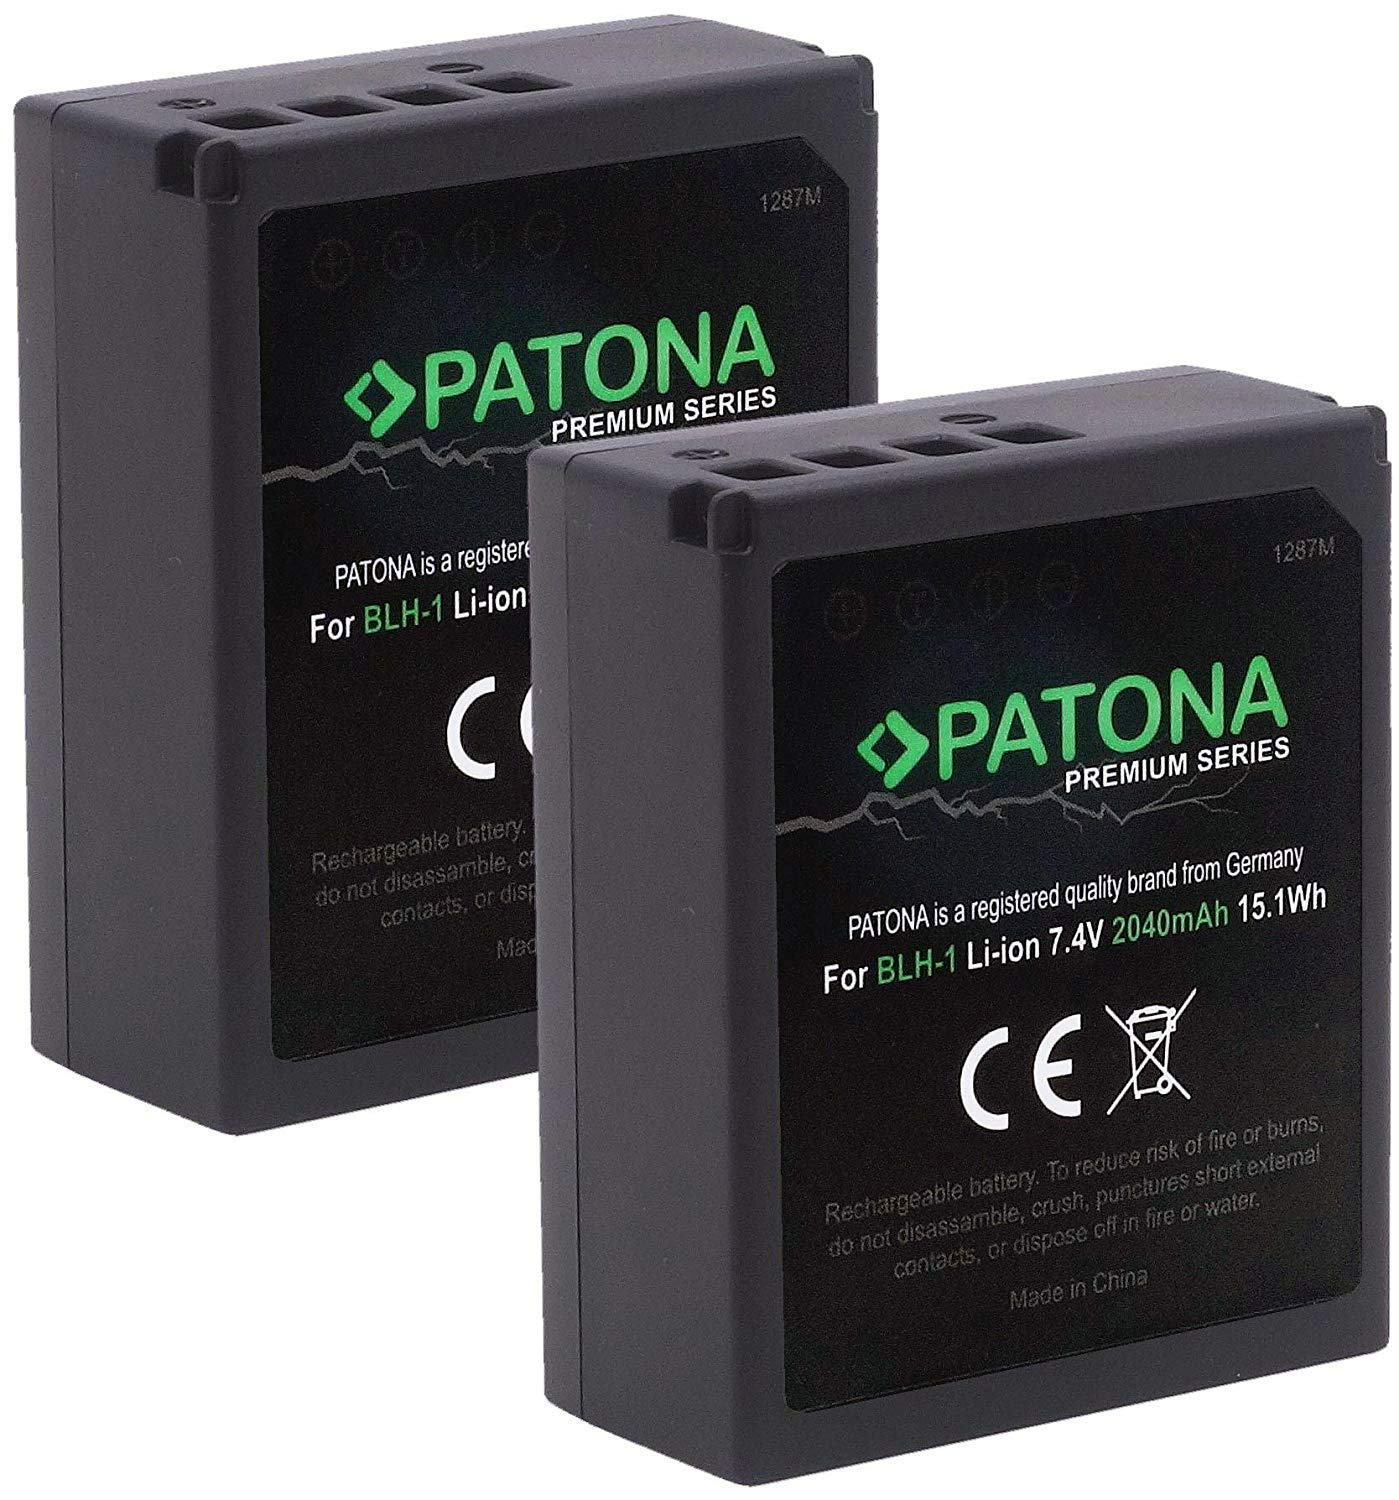 (Volldekodiert) PATONA Premium BLH-1 Kamera Akku 2X (echte 2040mAh) Kompatibel mit Olympus OM-D E-M1 Mark II III und OM-D E-M1X